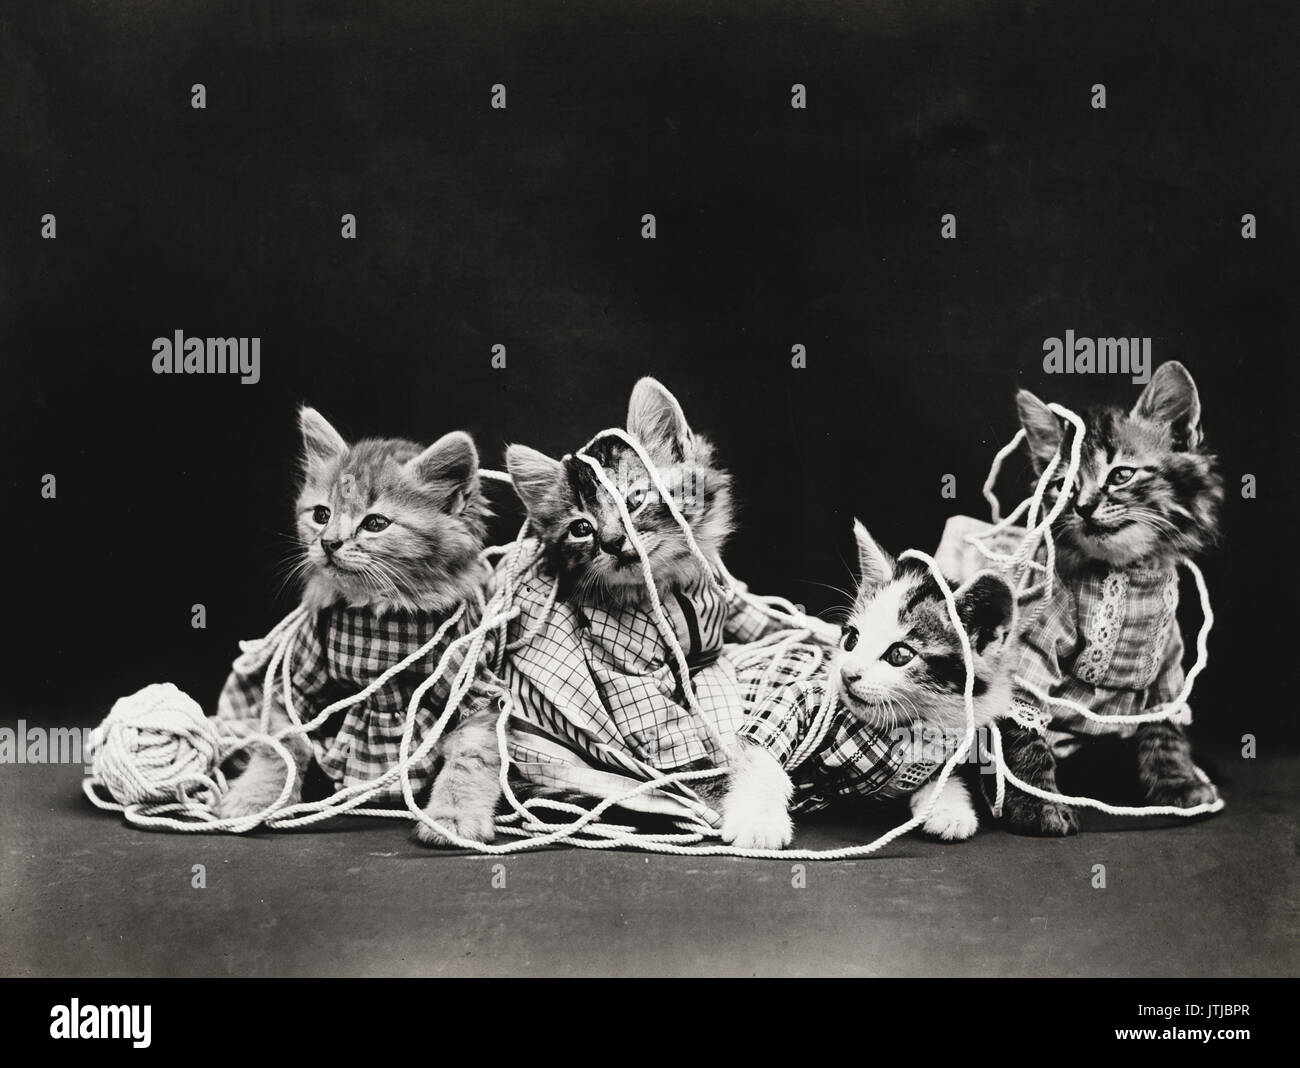 El enredamiento - Vintage Foto de cuatro gatitos vistiendo ropa jugando con una bola de hilo. Foto de stock